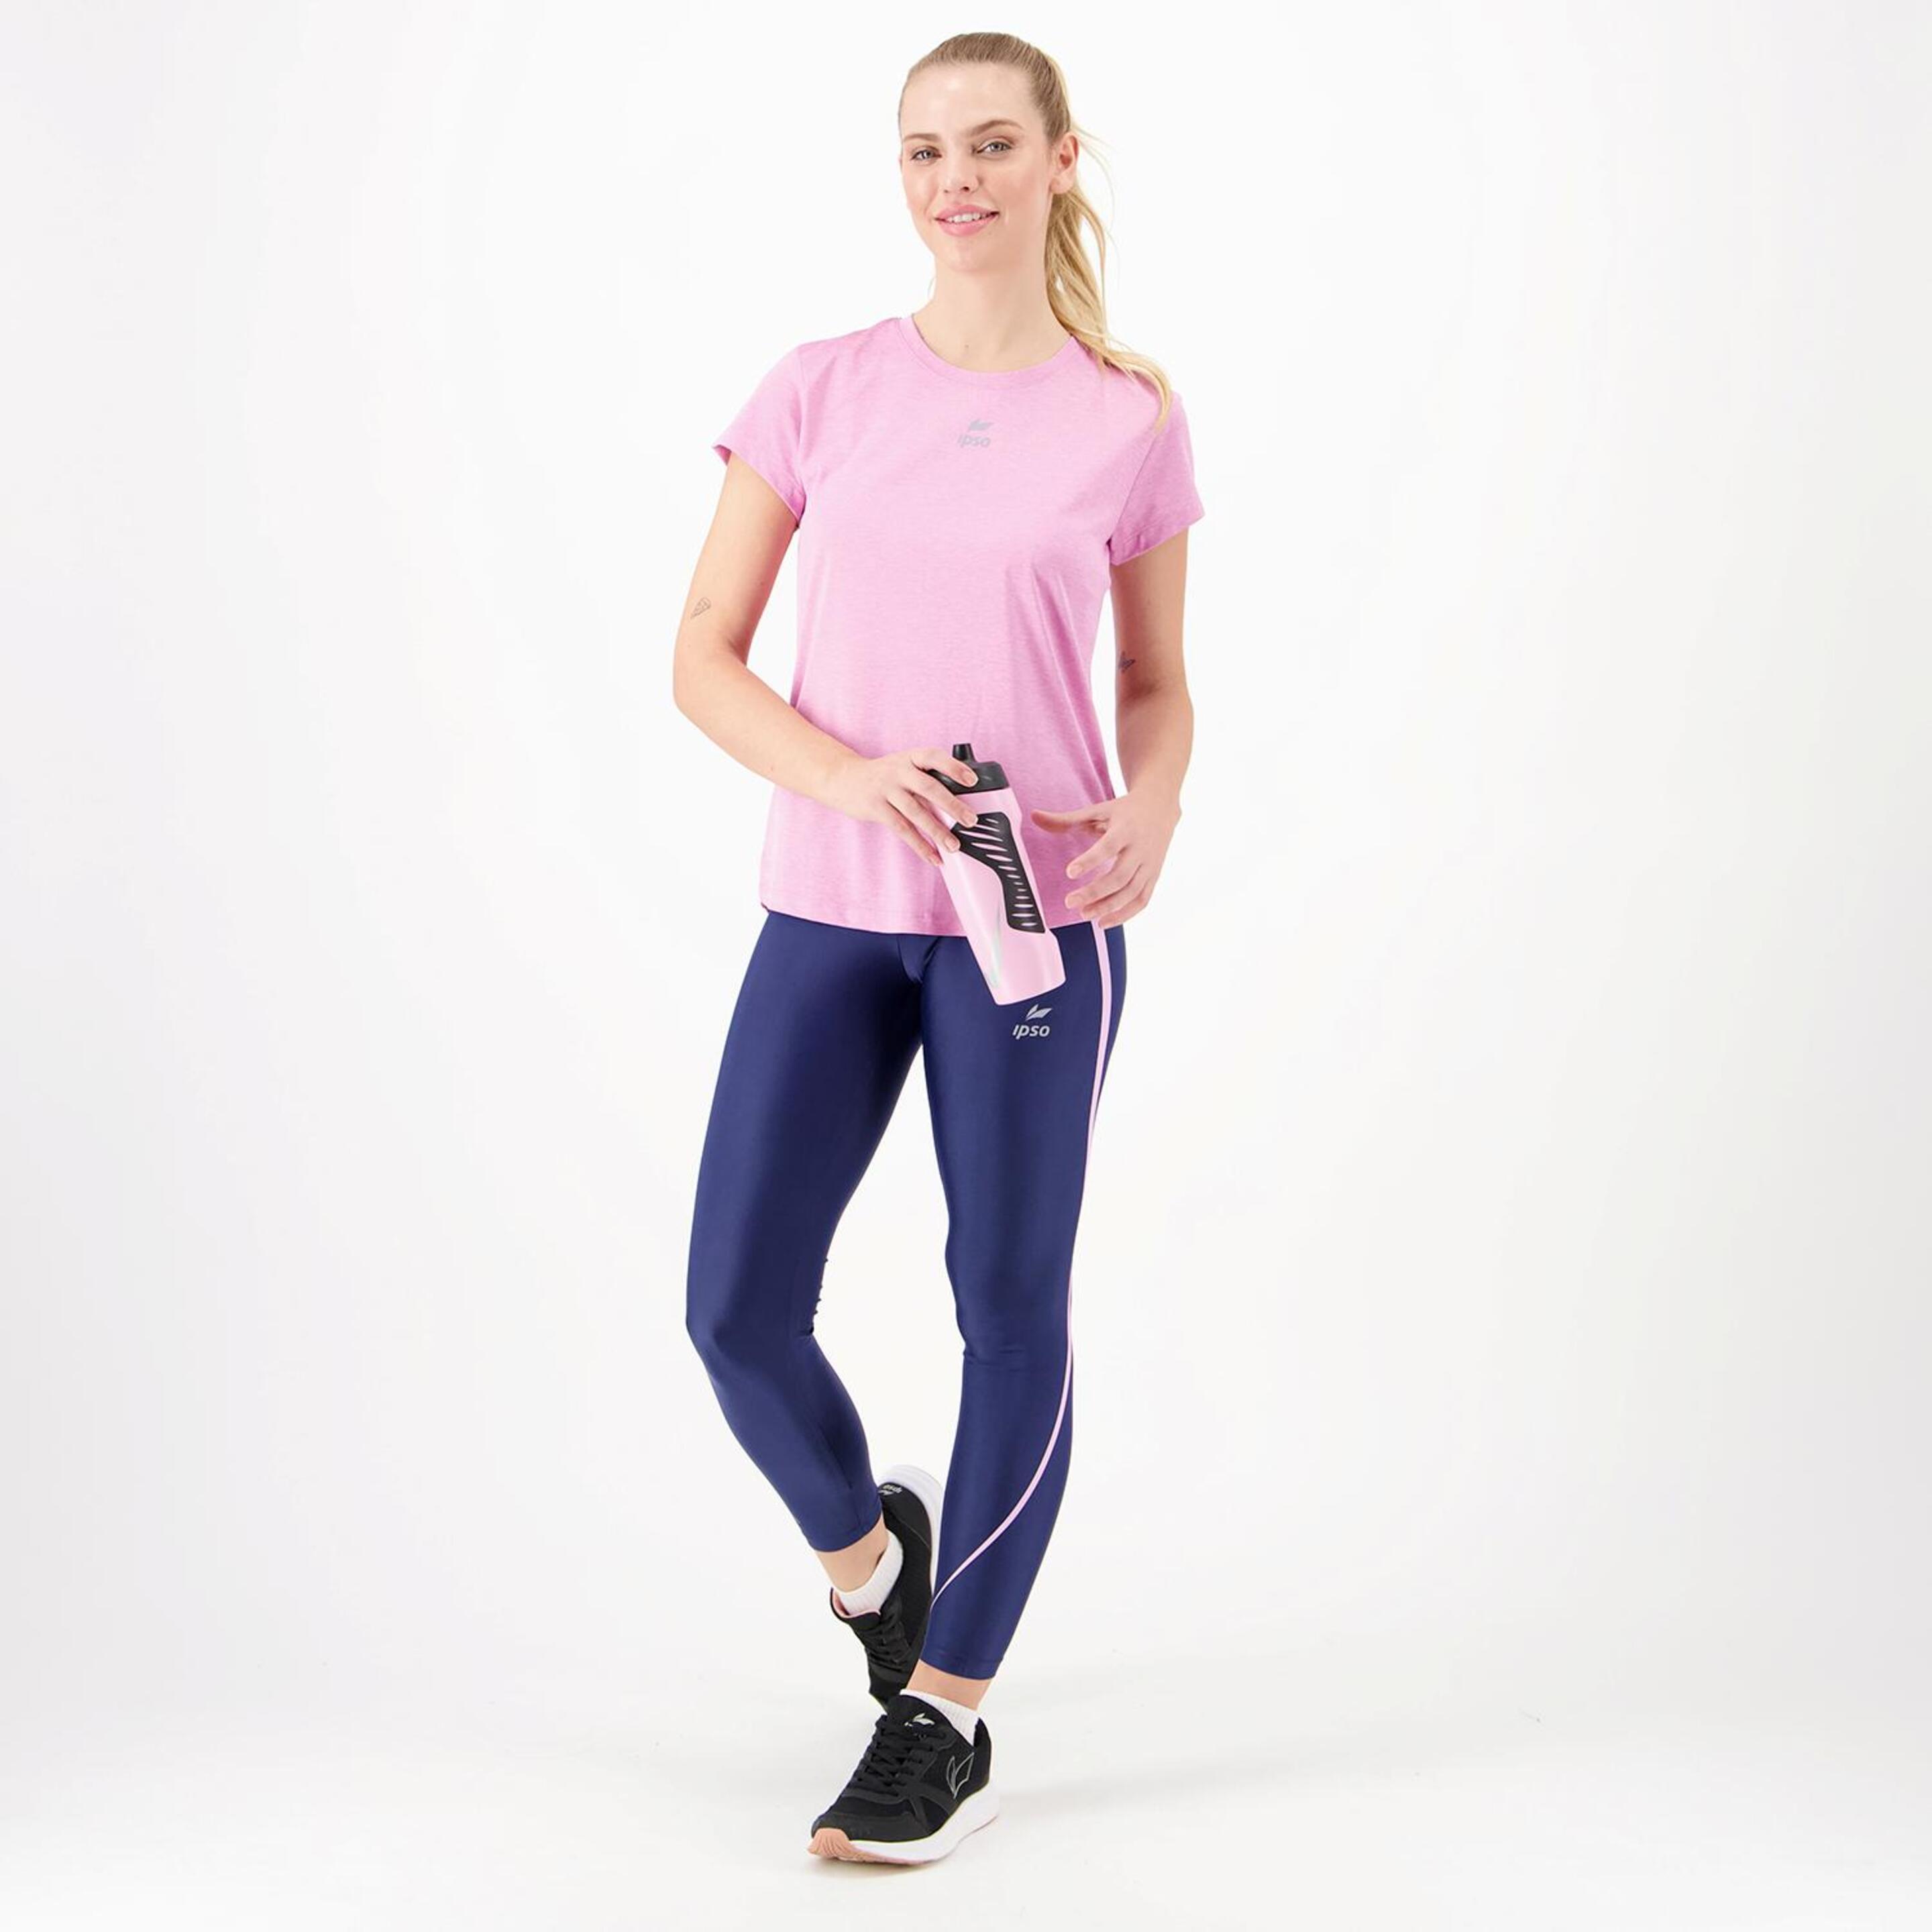 Ipso Combi 2 - Rosa - Camiseta Running Mujer  | Sprinter